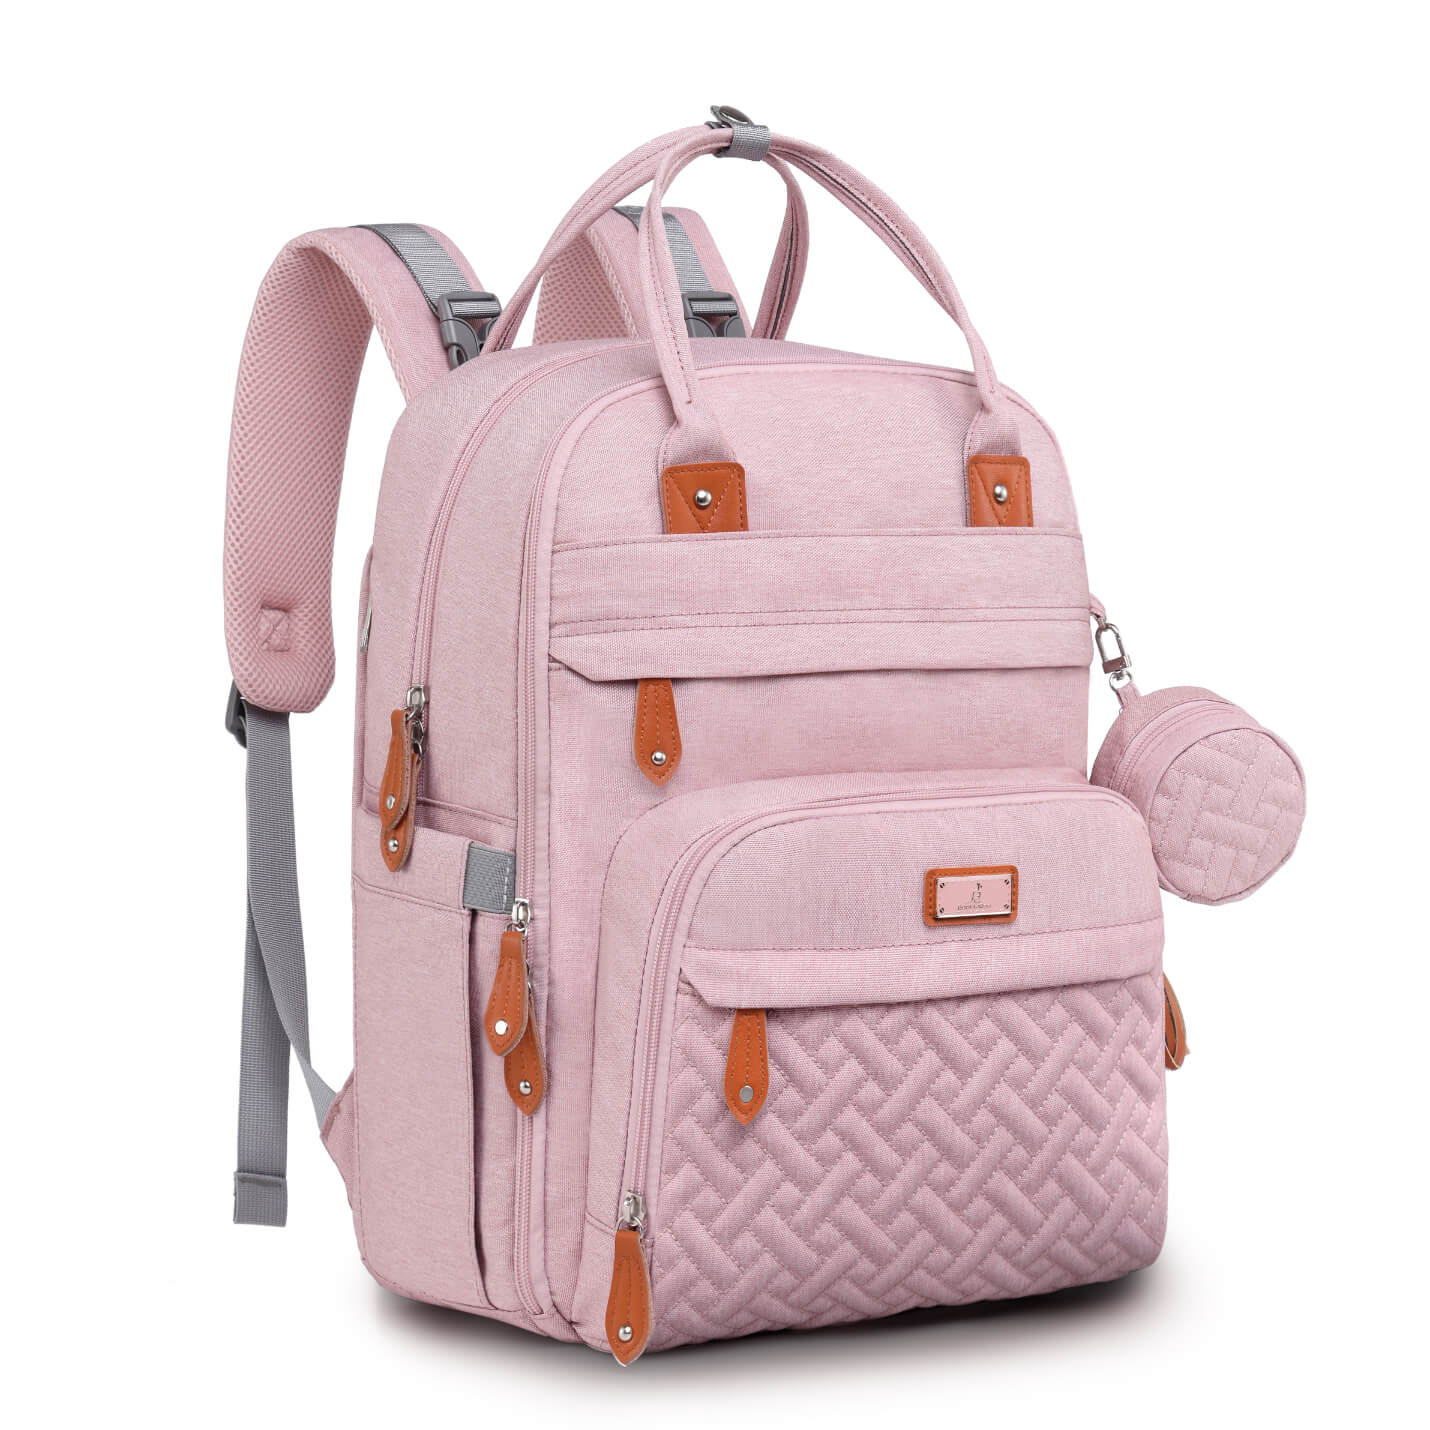 Original Diaper Backpack - Pink